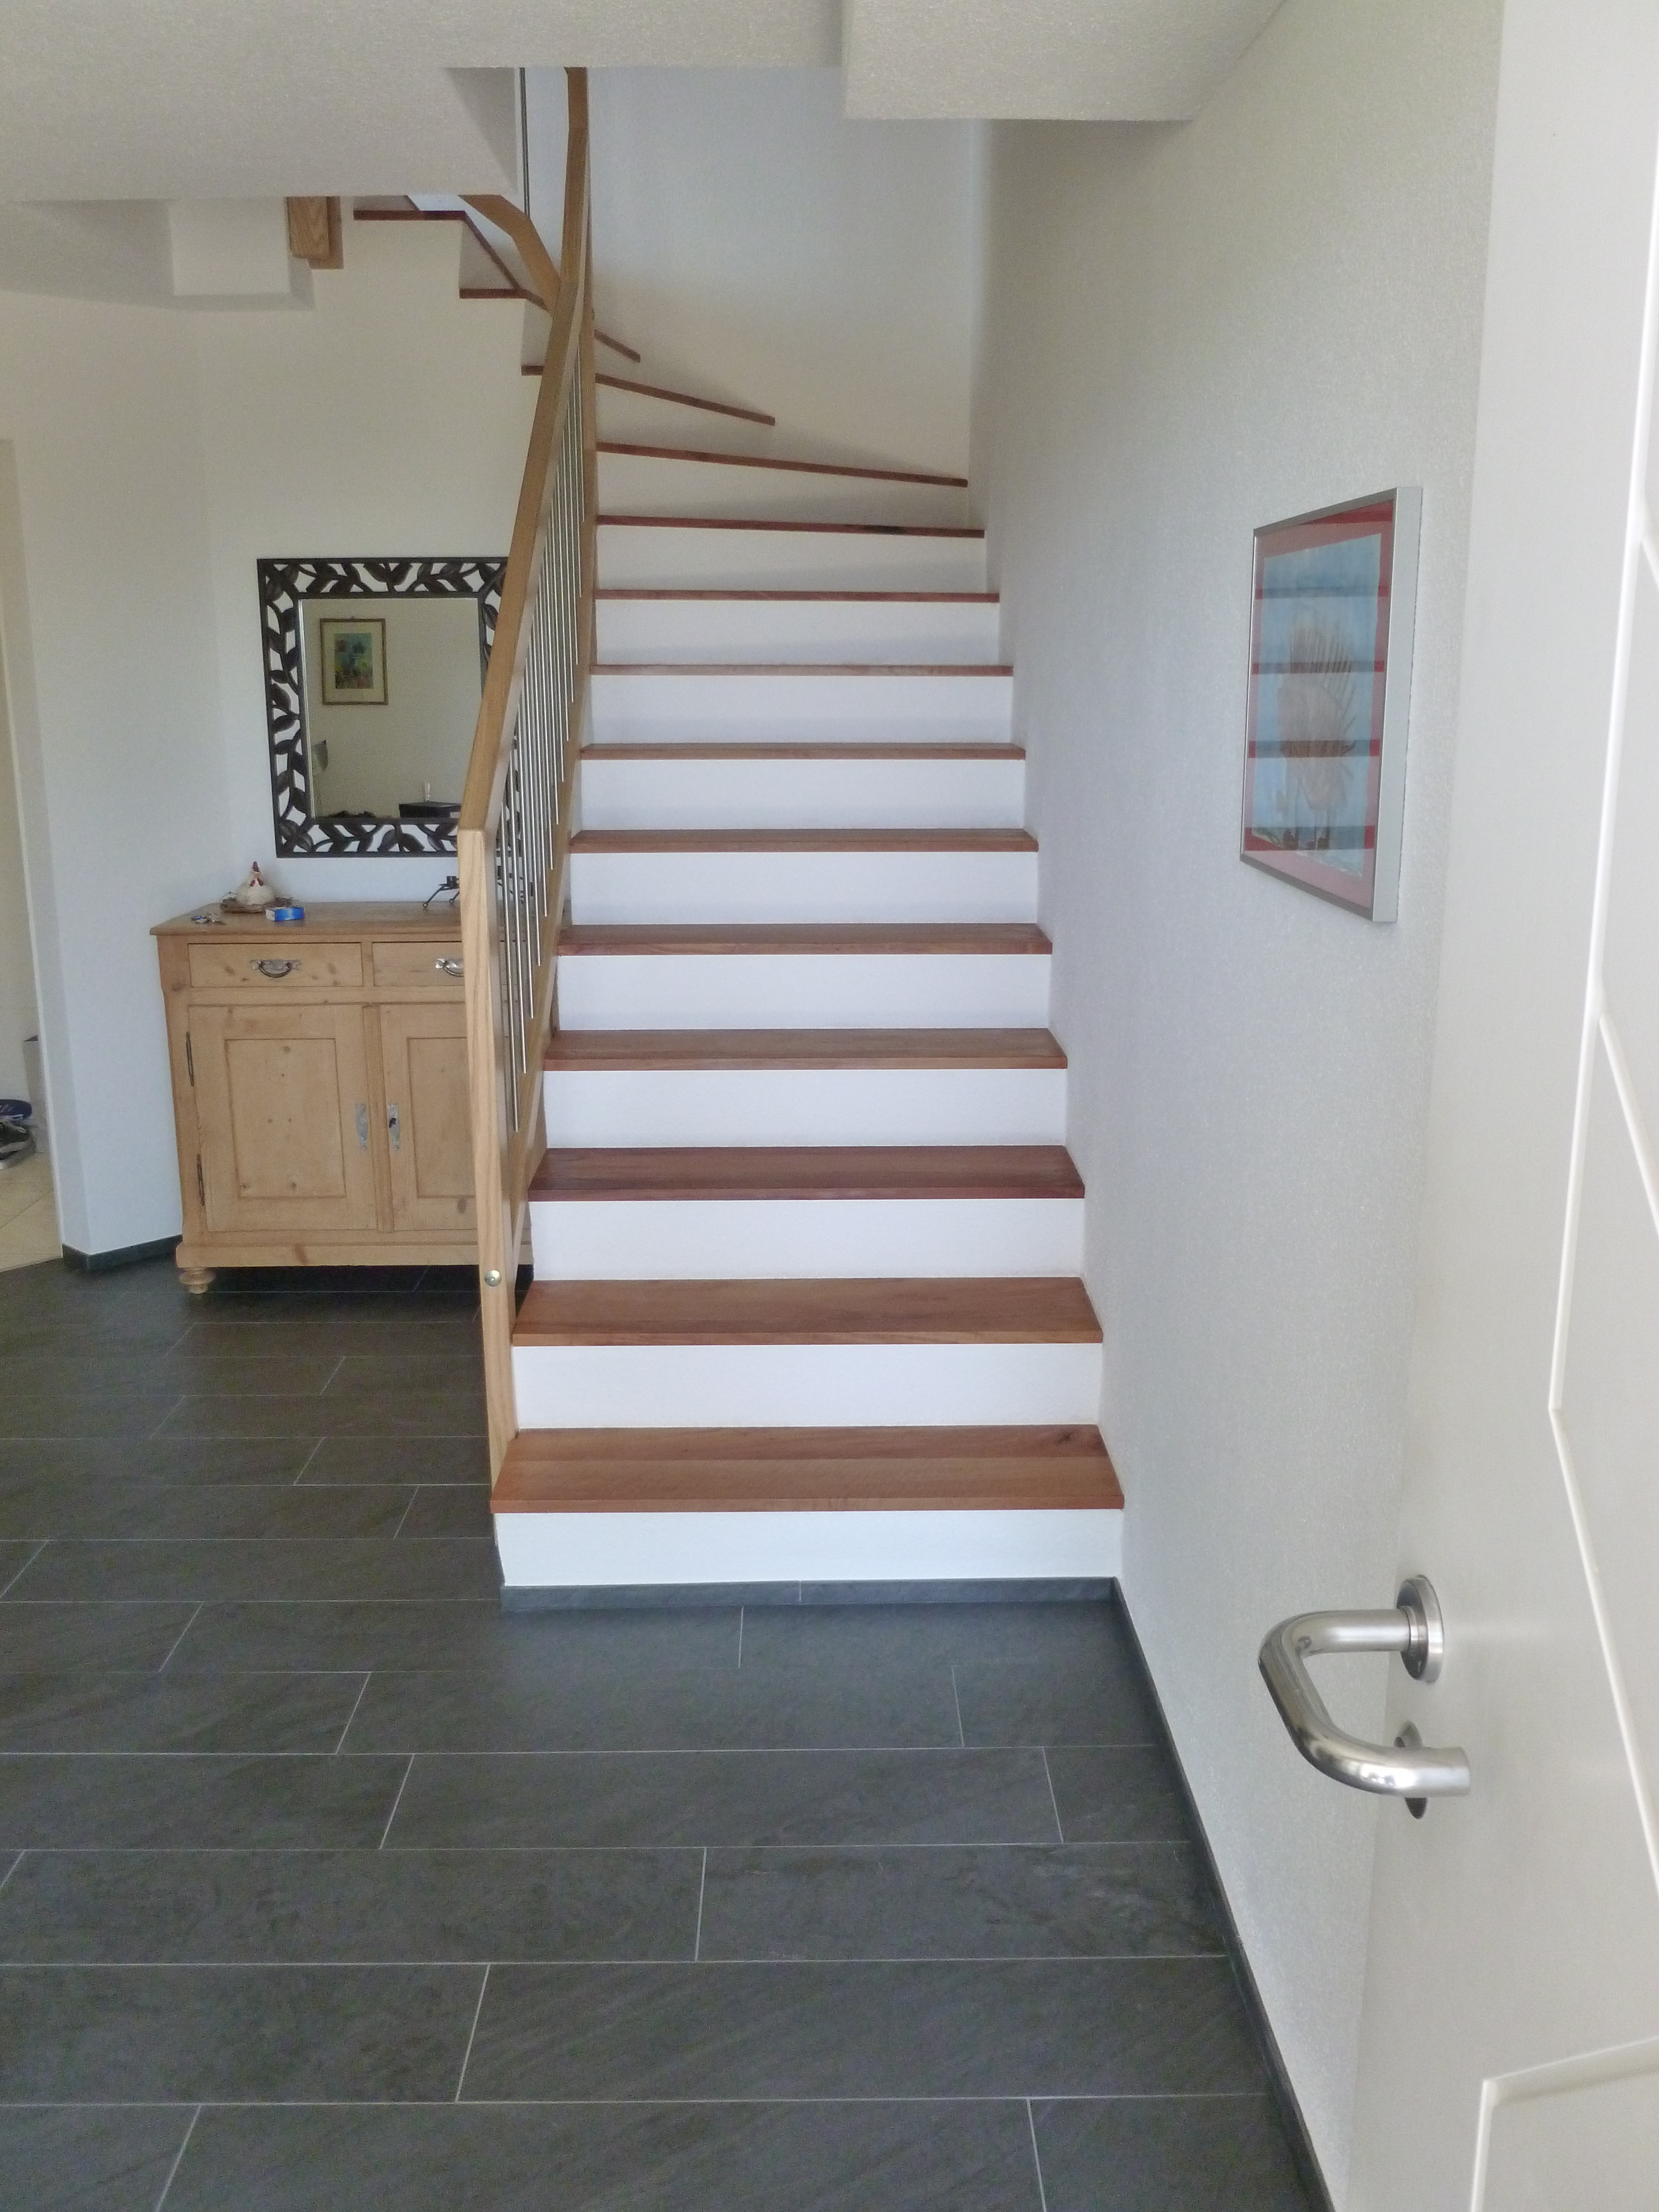 Treppen mit neue Holztritte und Boden mit Keramikplatten - Gassmann-Innenausbau Bäretswil